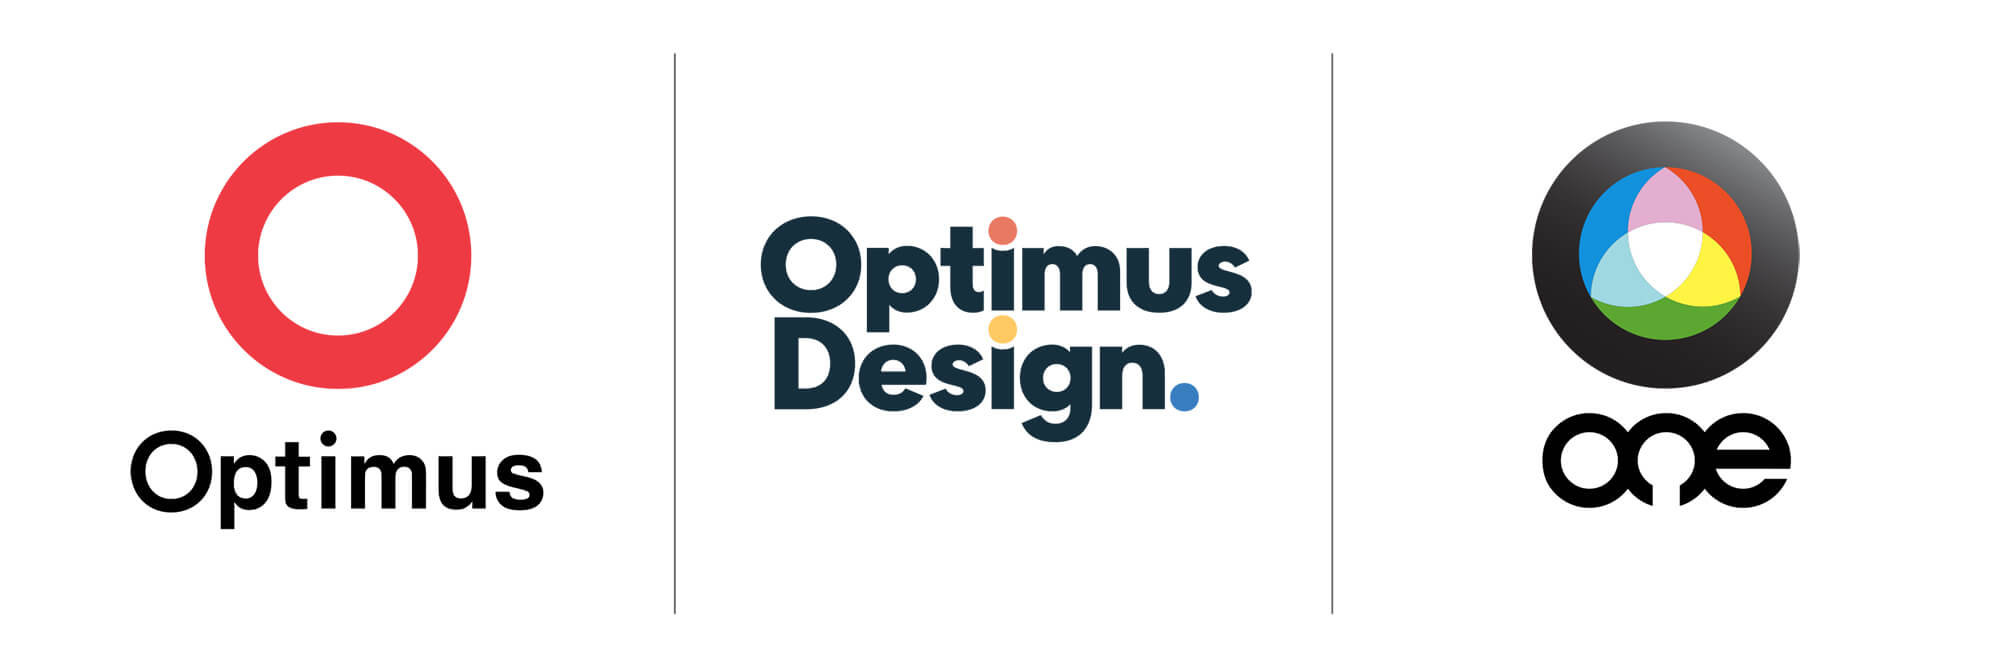 logotipos de optimus, optimus design y optimus one